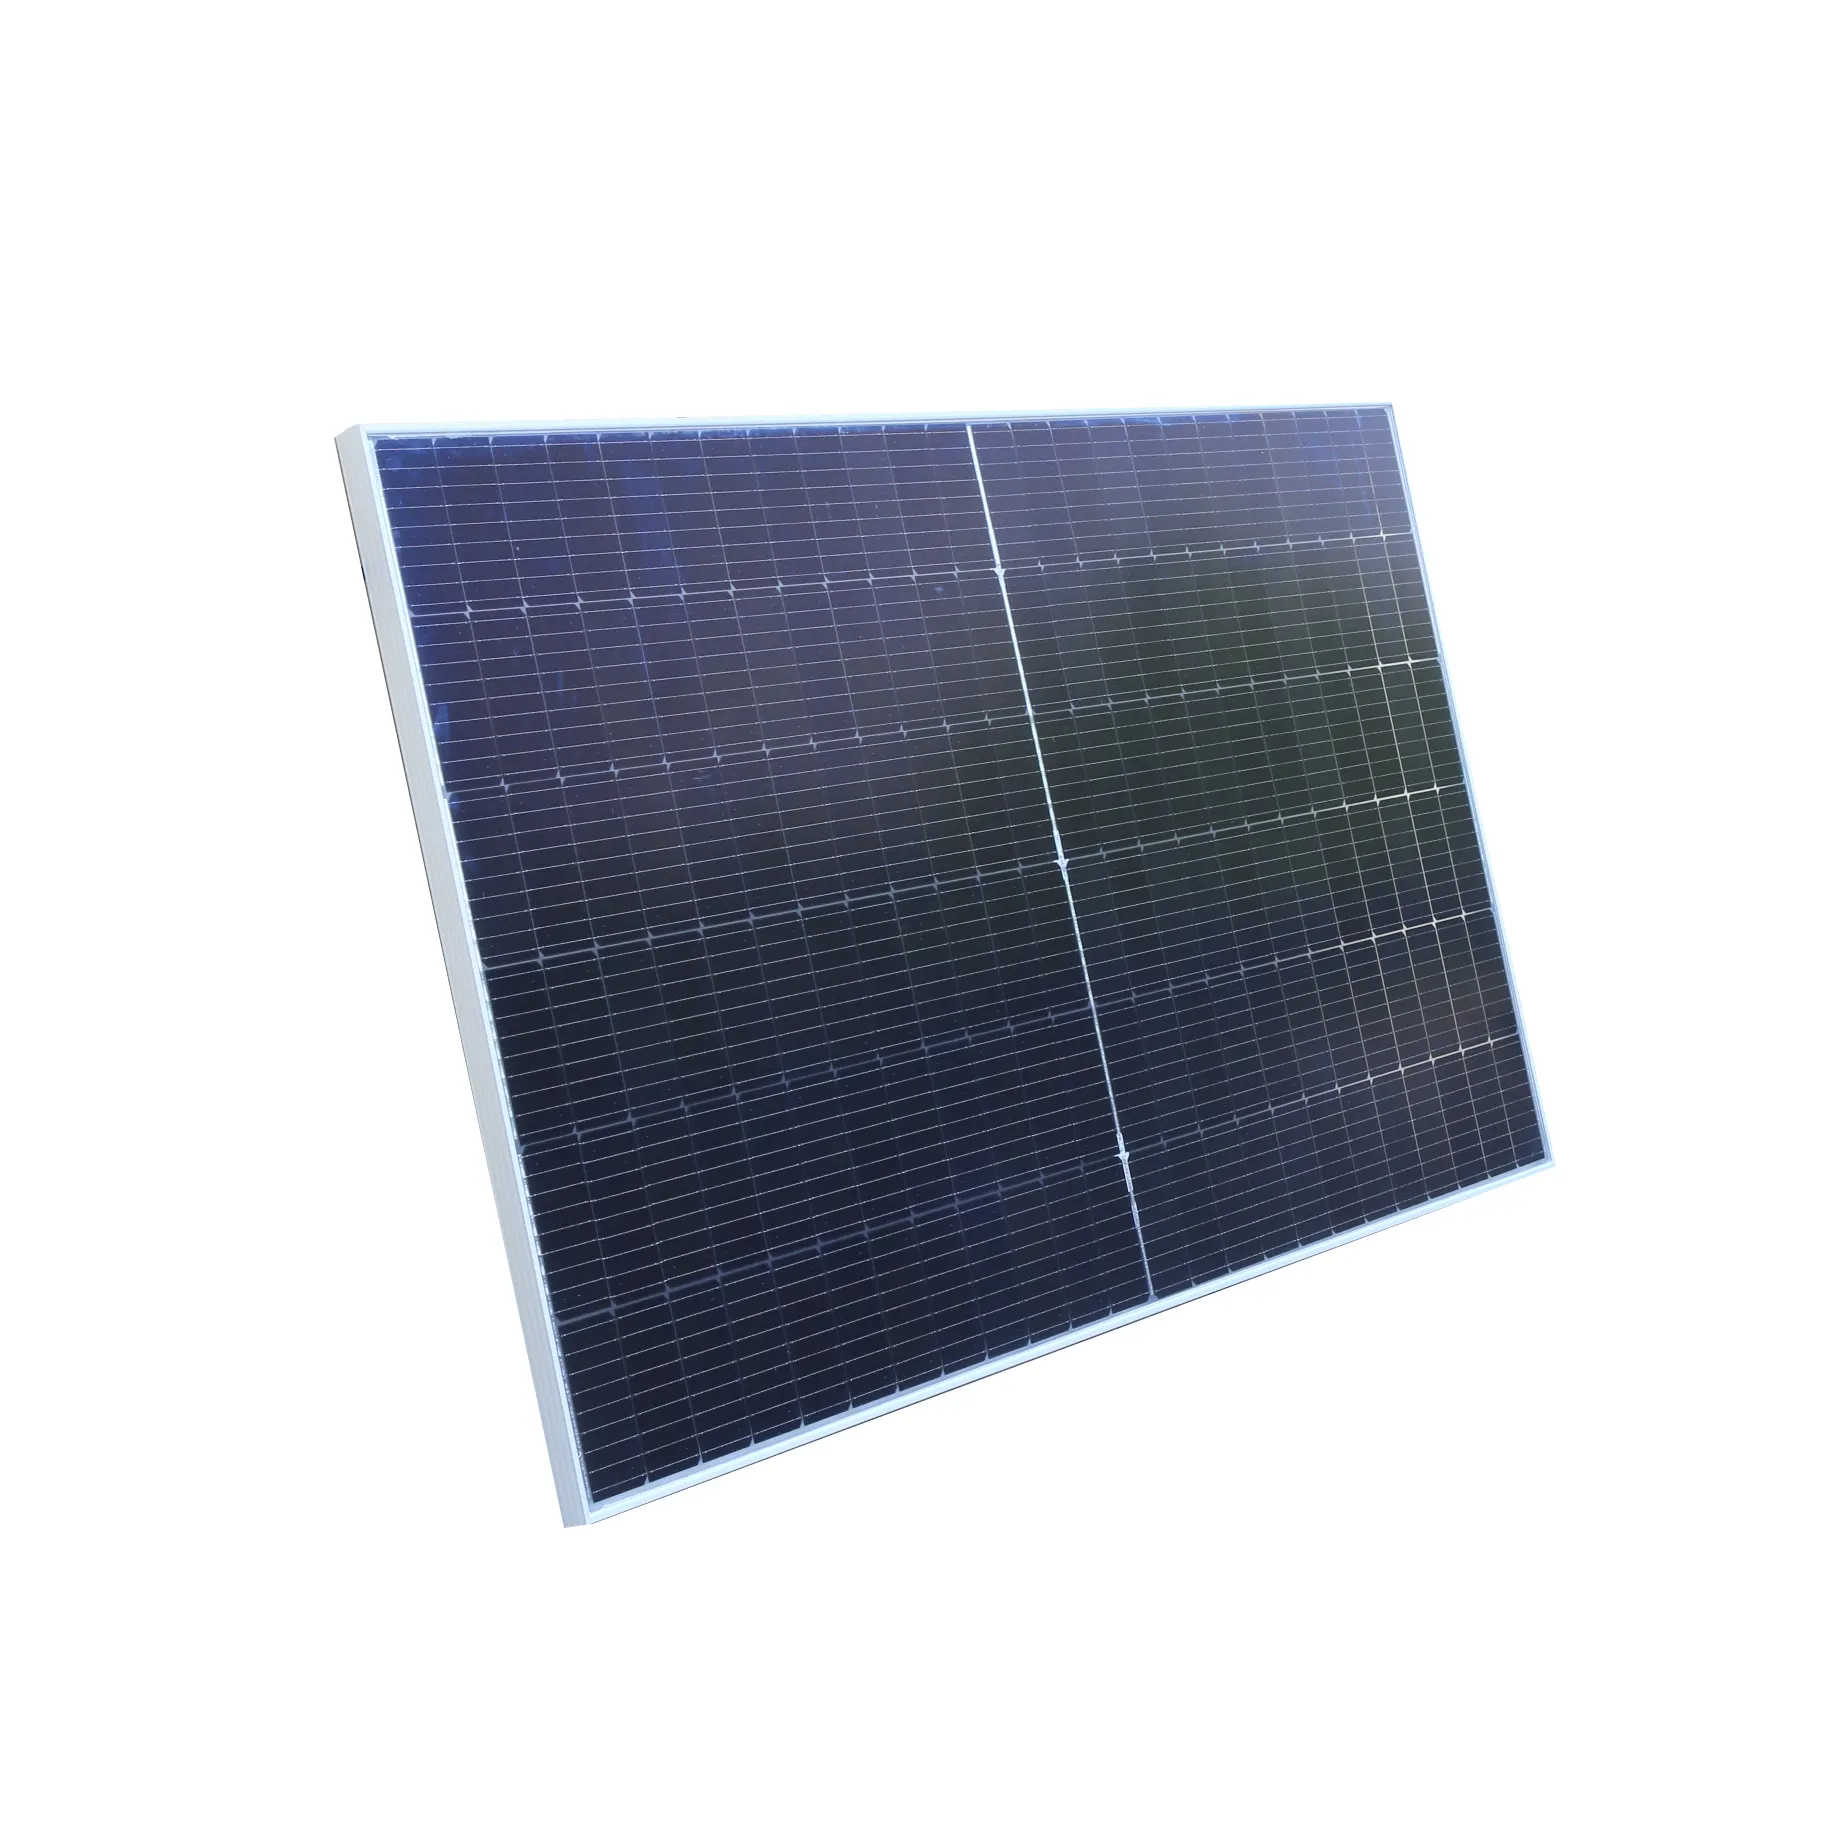 Hisem 540w 545w 550w pannello solare monocristallino solare modulo fotovoltaico ad alta efficienza pannello solare su un lato